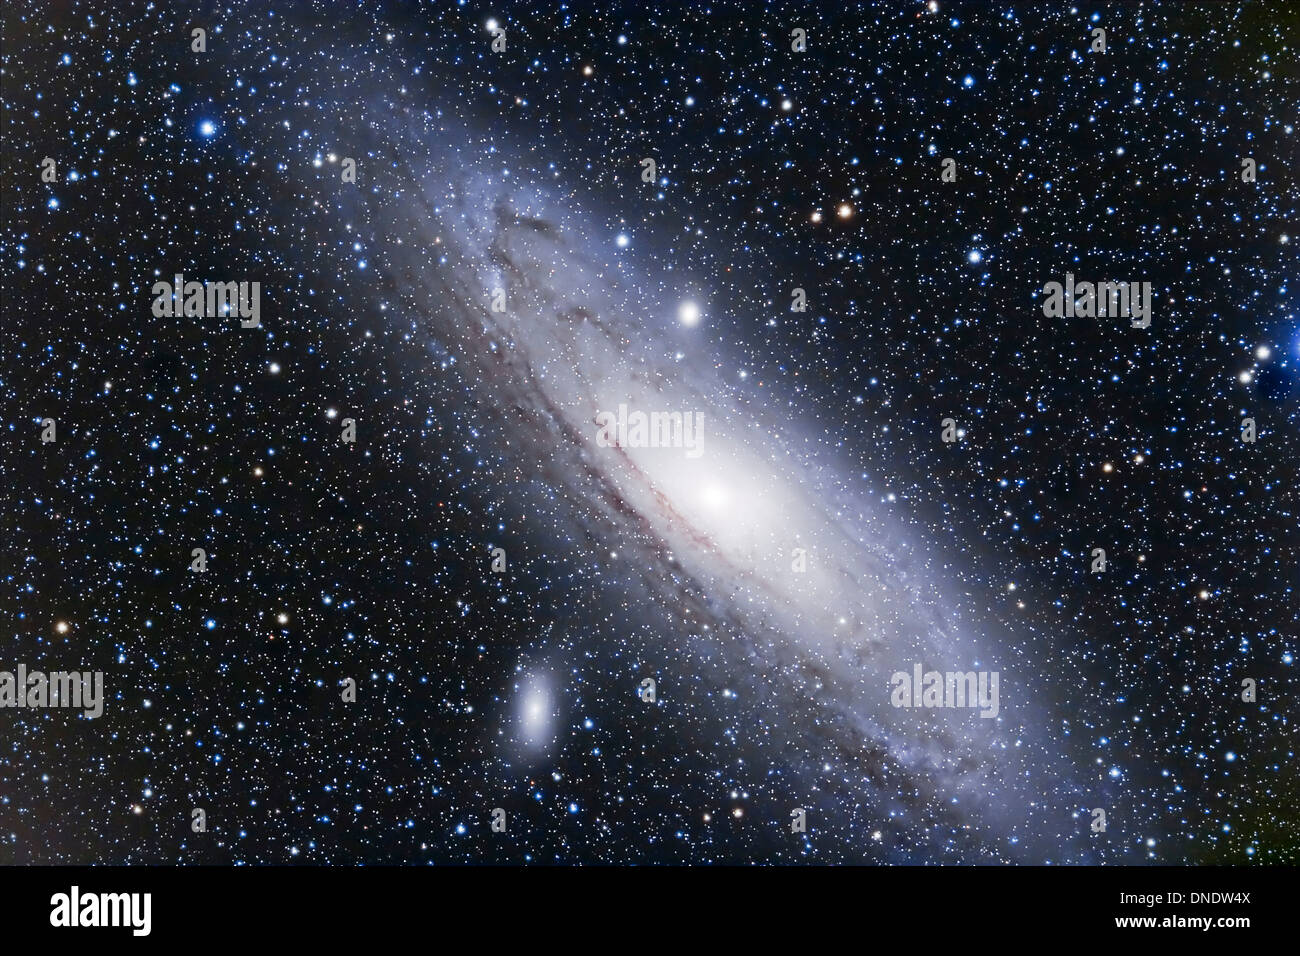 La galaxie d'Andromède, une galaxie spirale dans la constellation d'Andromède. Banque D'Images